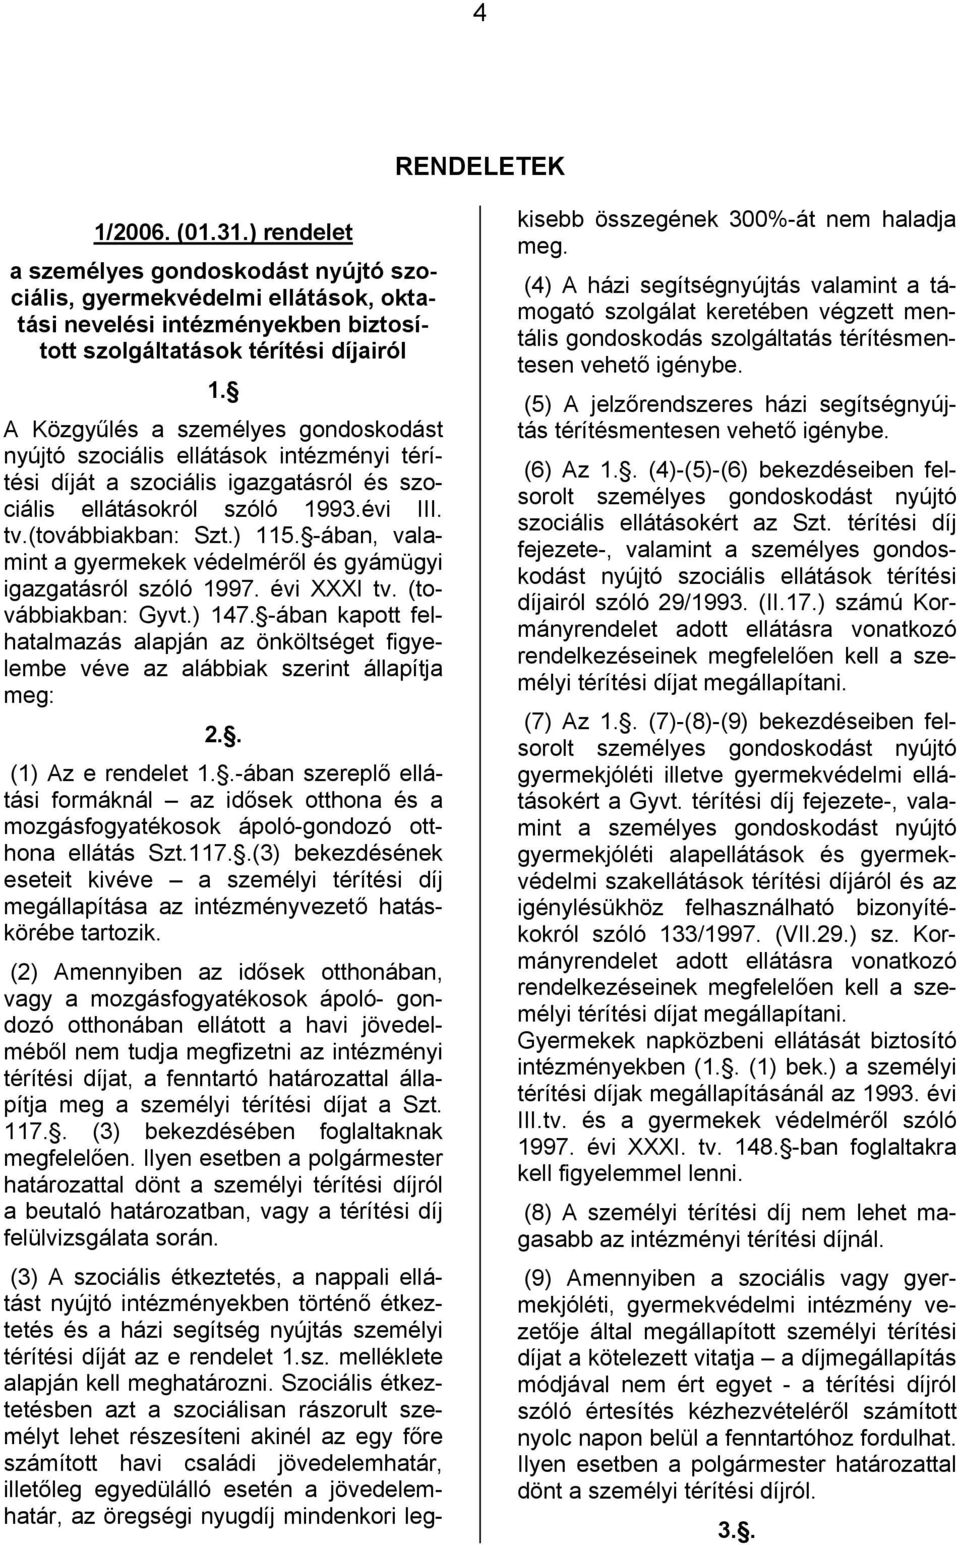 -ában, valamint a gyermekek védelméről és gyámügyi igazgatásról szóló 1997. évi XXXI tv. (továbbiakban: Gyvt.) 147.